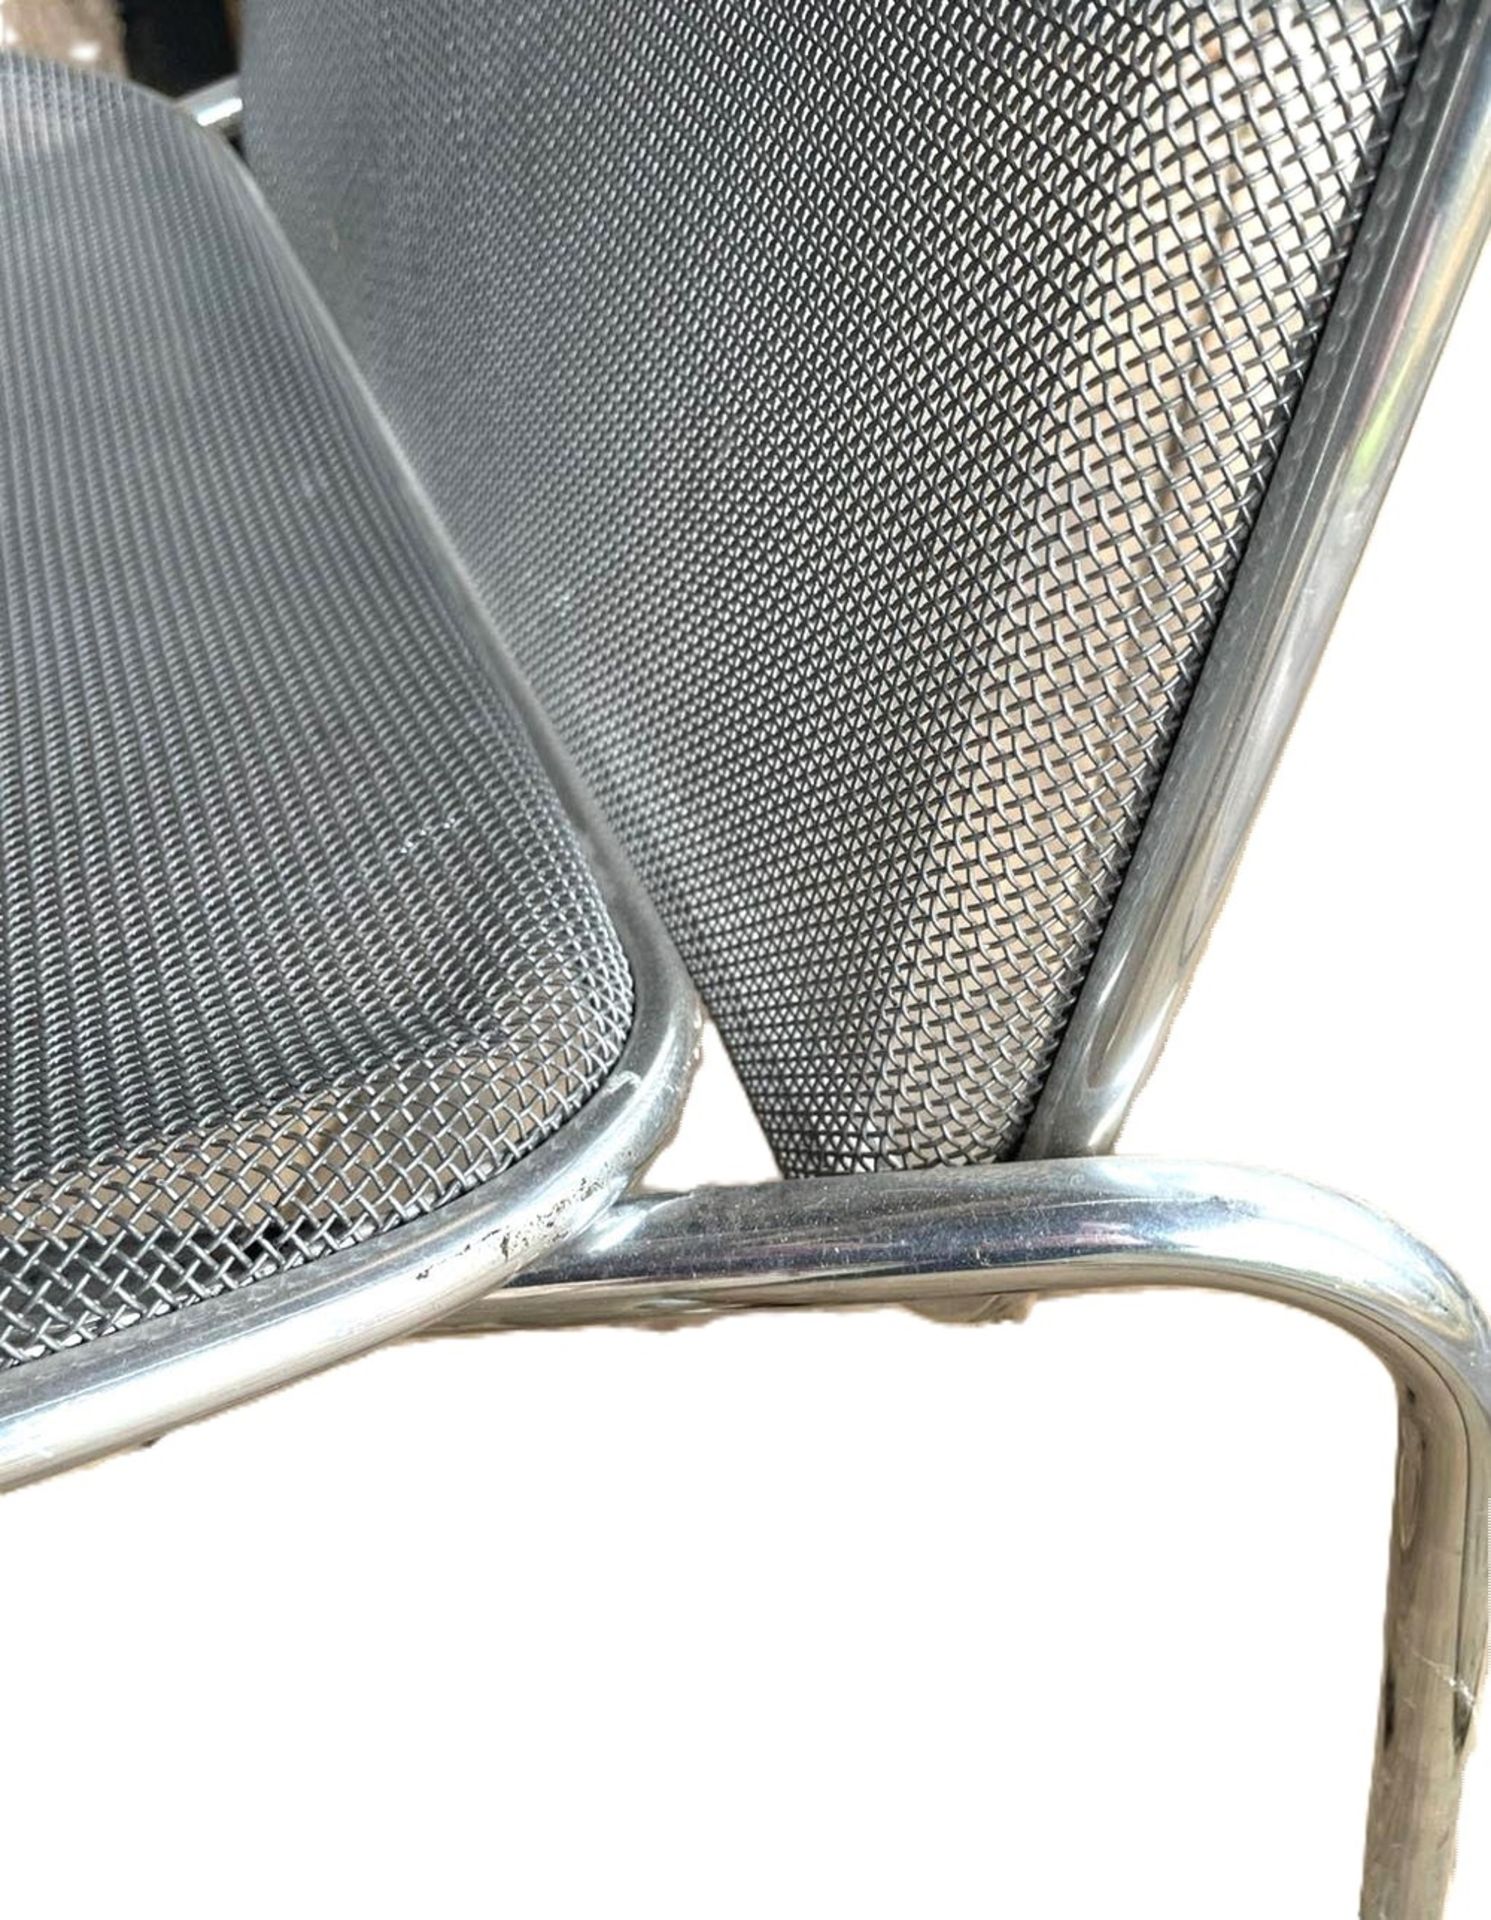 wohl Firma Knoll, Metall Longchair, Sitzfläche abnehmbar, Designklassiker aus den 80er Jahren. - Bild 3 aus 3